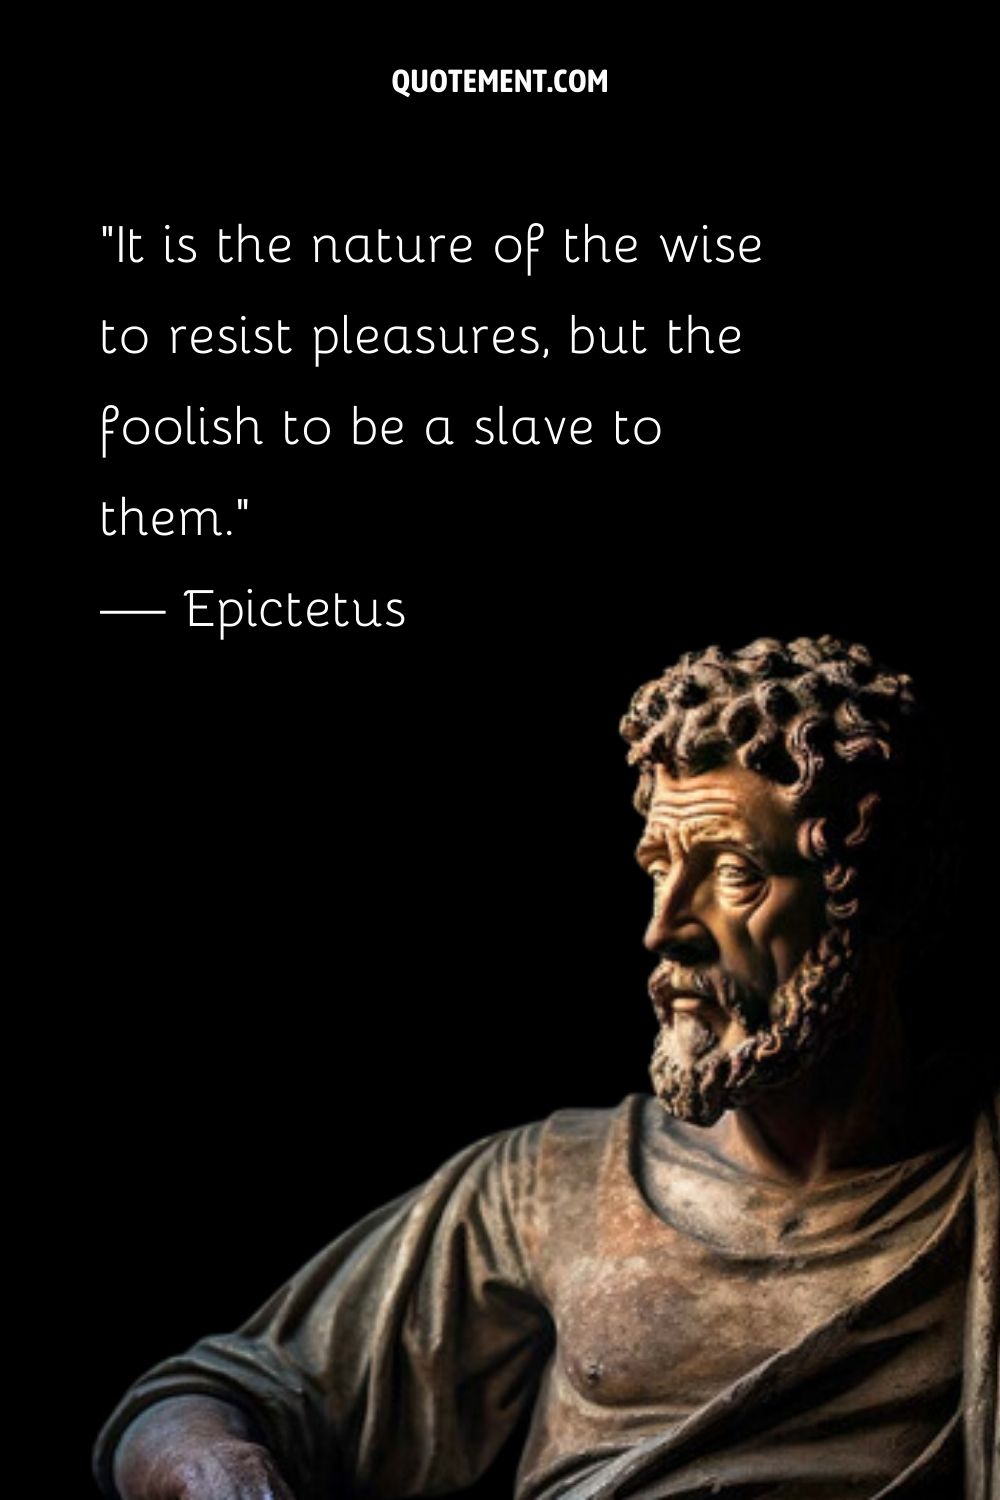 La sabiduría estoica de Epicteto eternamente plasmada en mármol